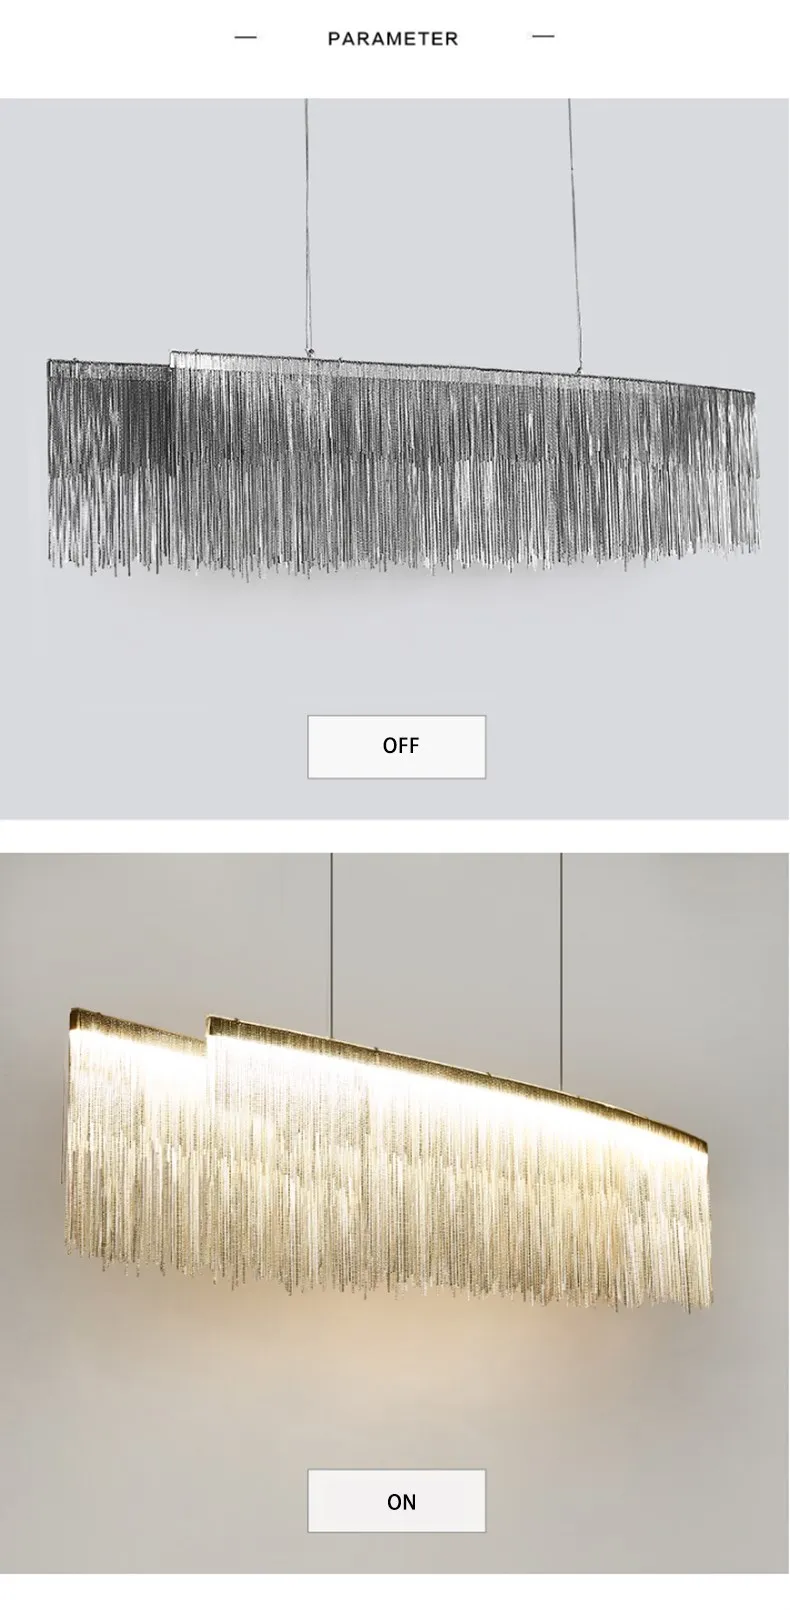 Modern Chandelier Lighting For Living room Bedroom Dining Room Lustre de cristal Chandeliers Pendant Hanging Ceiling Fixtures